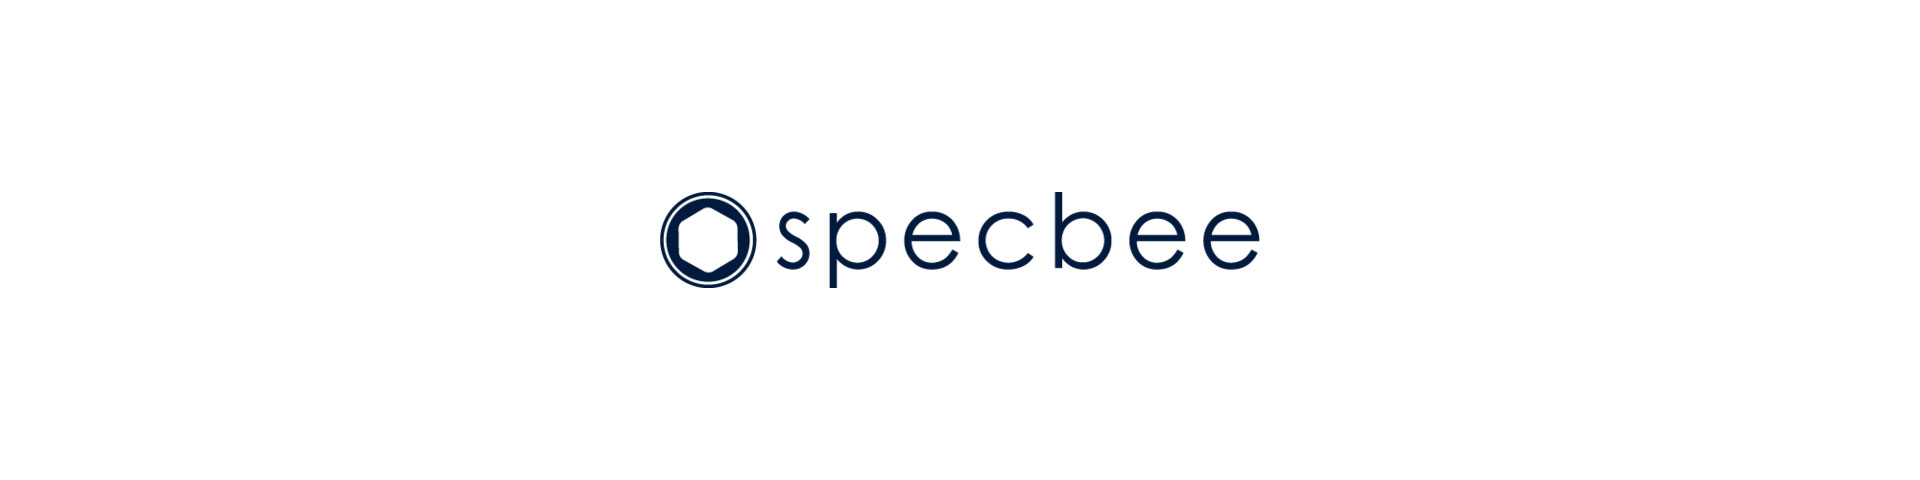 Specbee